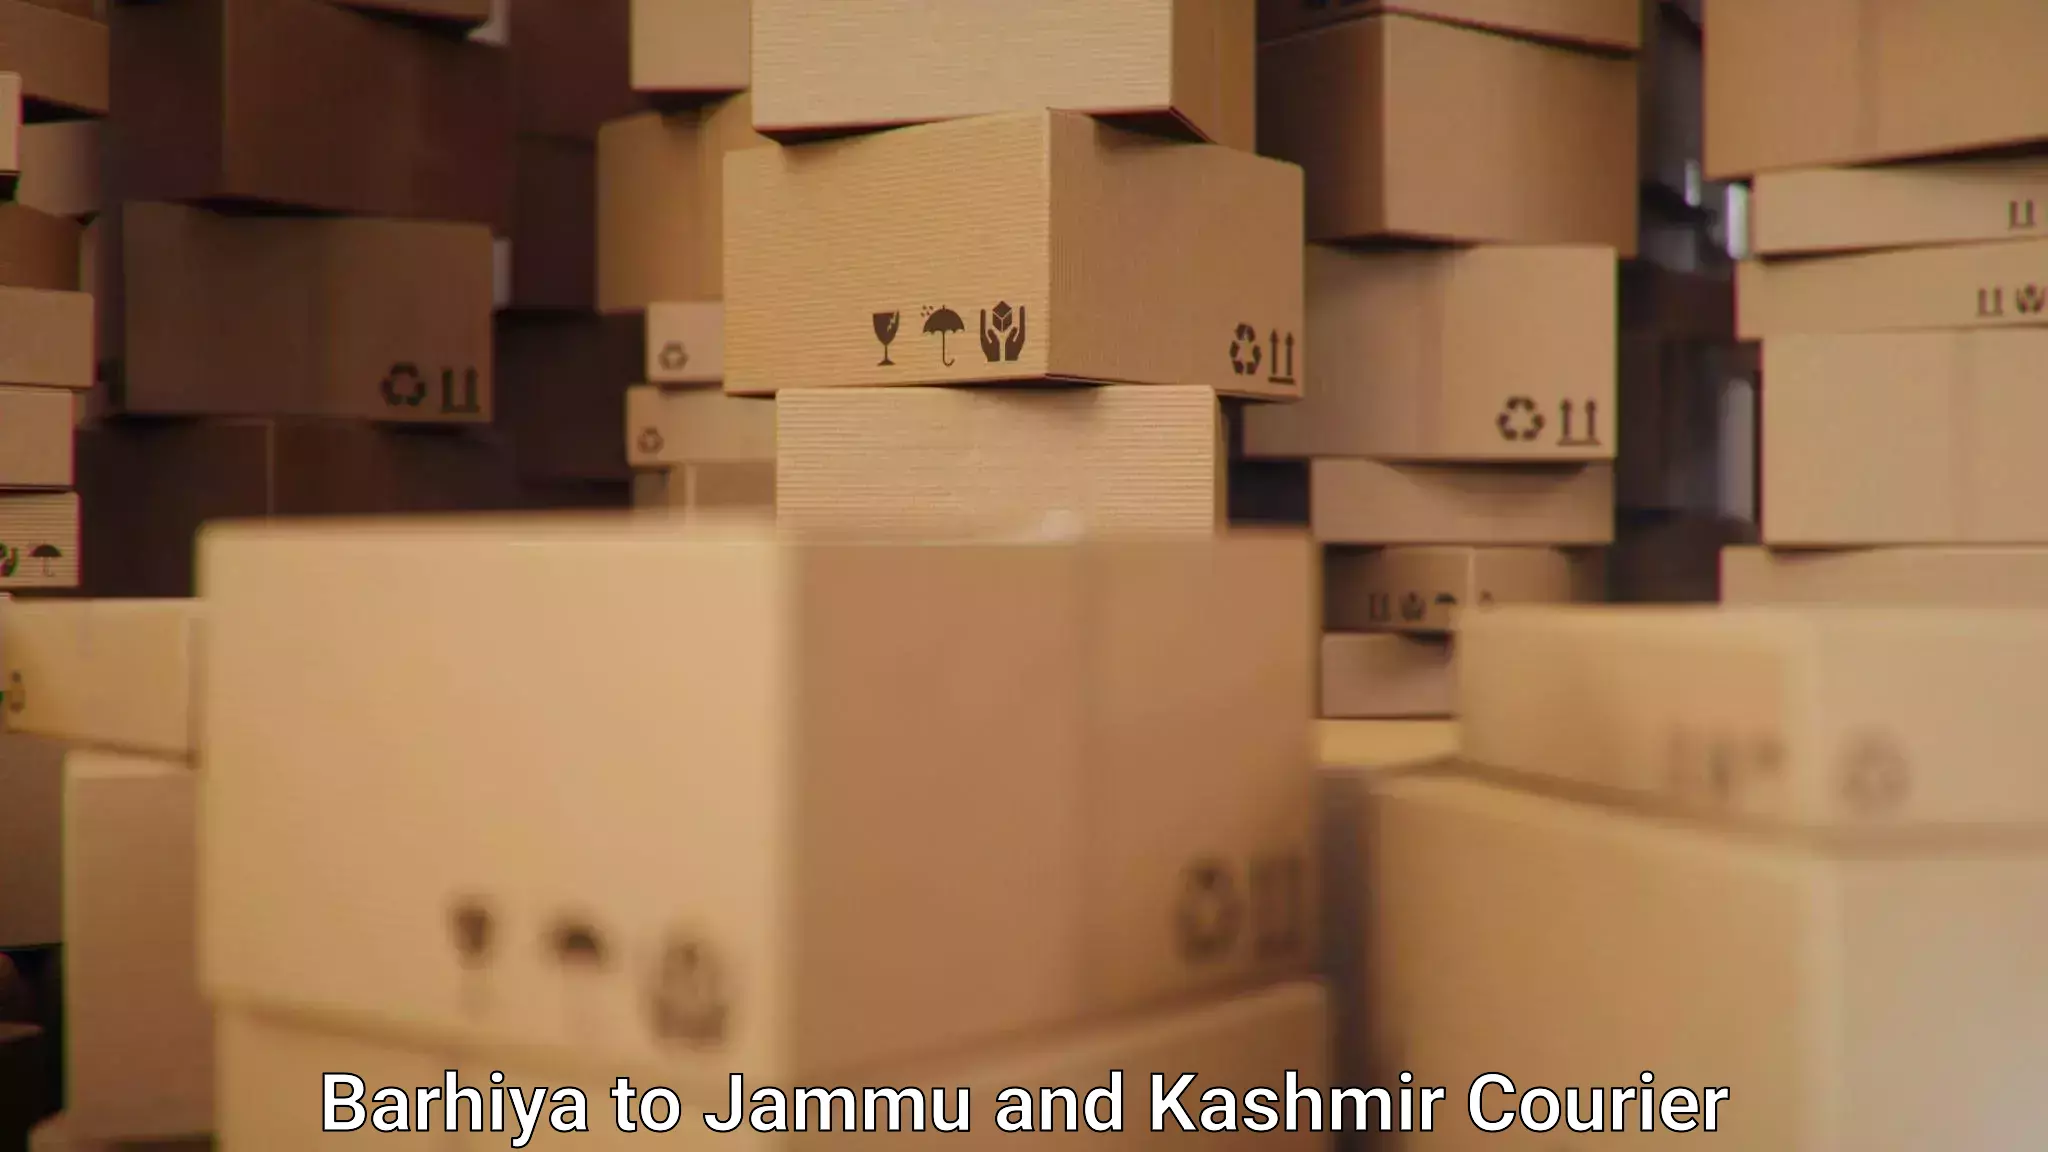 Courier service comparison Barhiya to Jammu and Kashmir